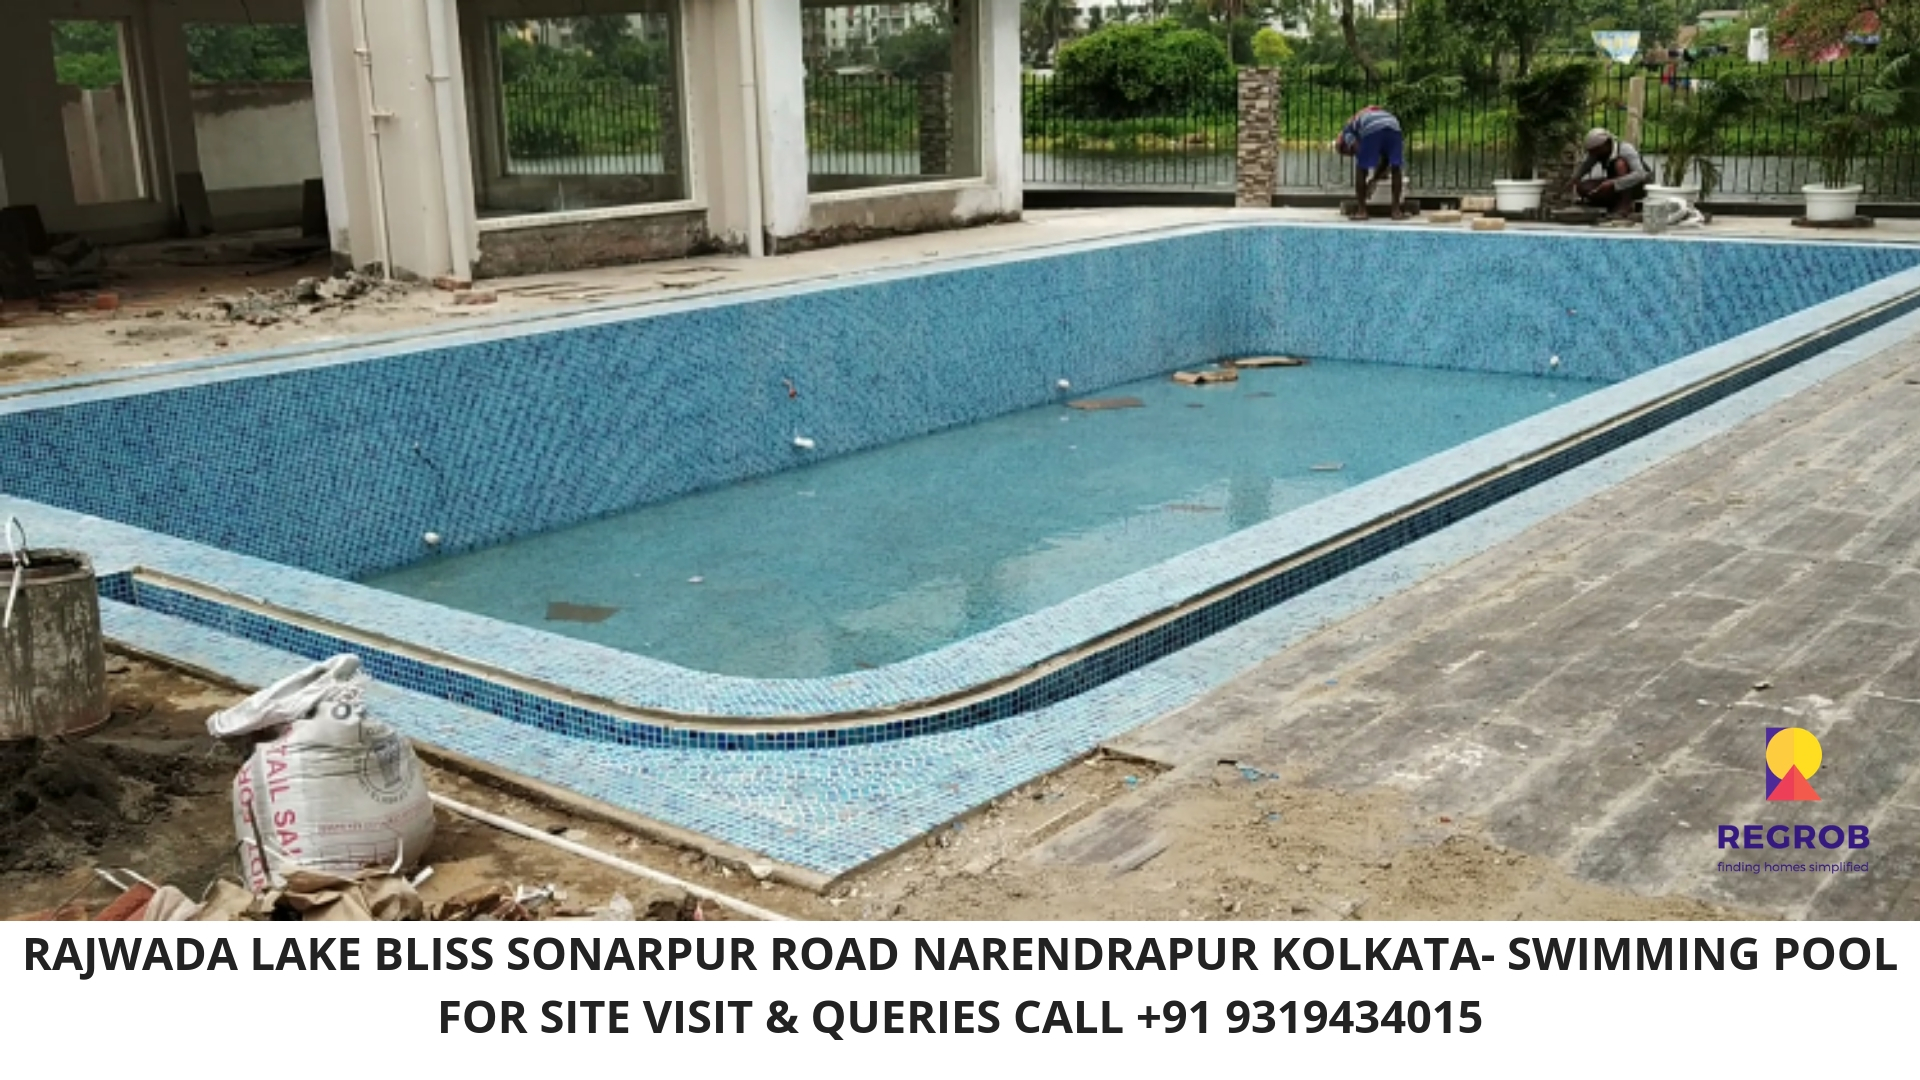 Rajwada Lake Bliss Sonarpur Road Kolkata